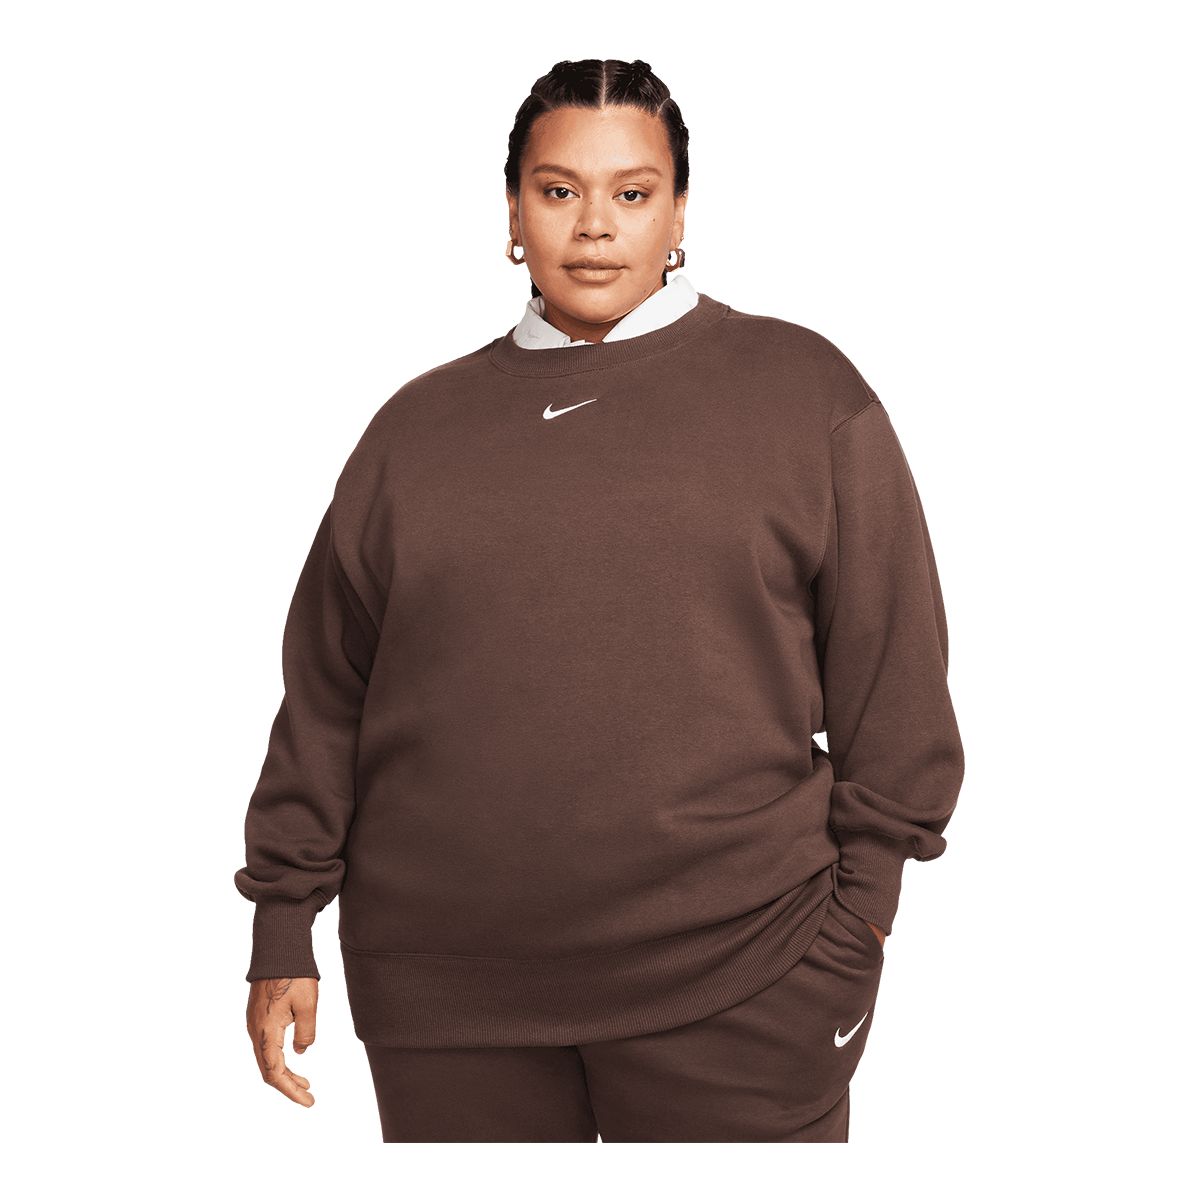 Nike Women's Phoeix Fleece Oversized Crew Sweatshirt